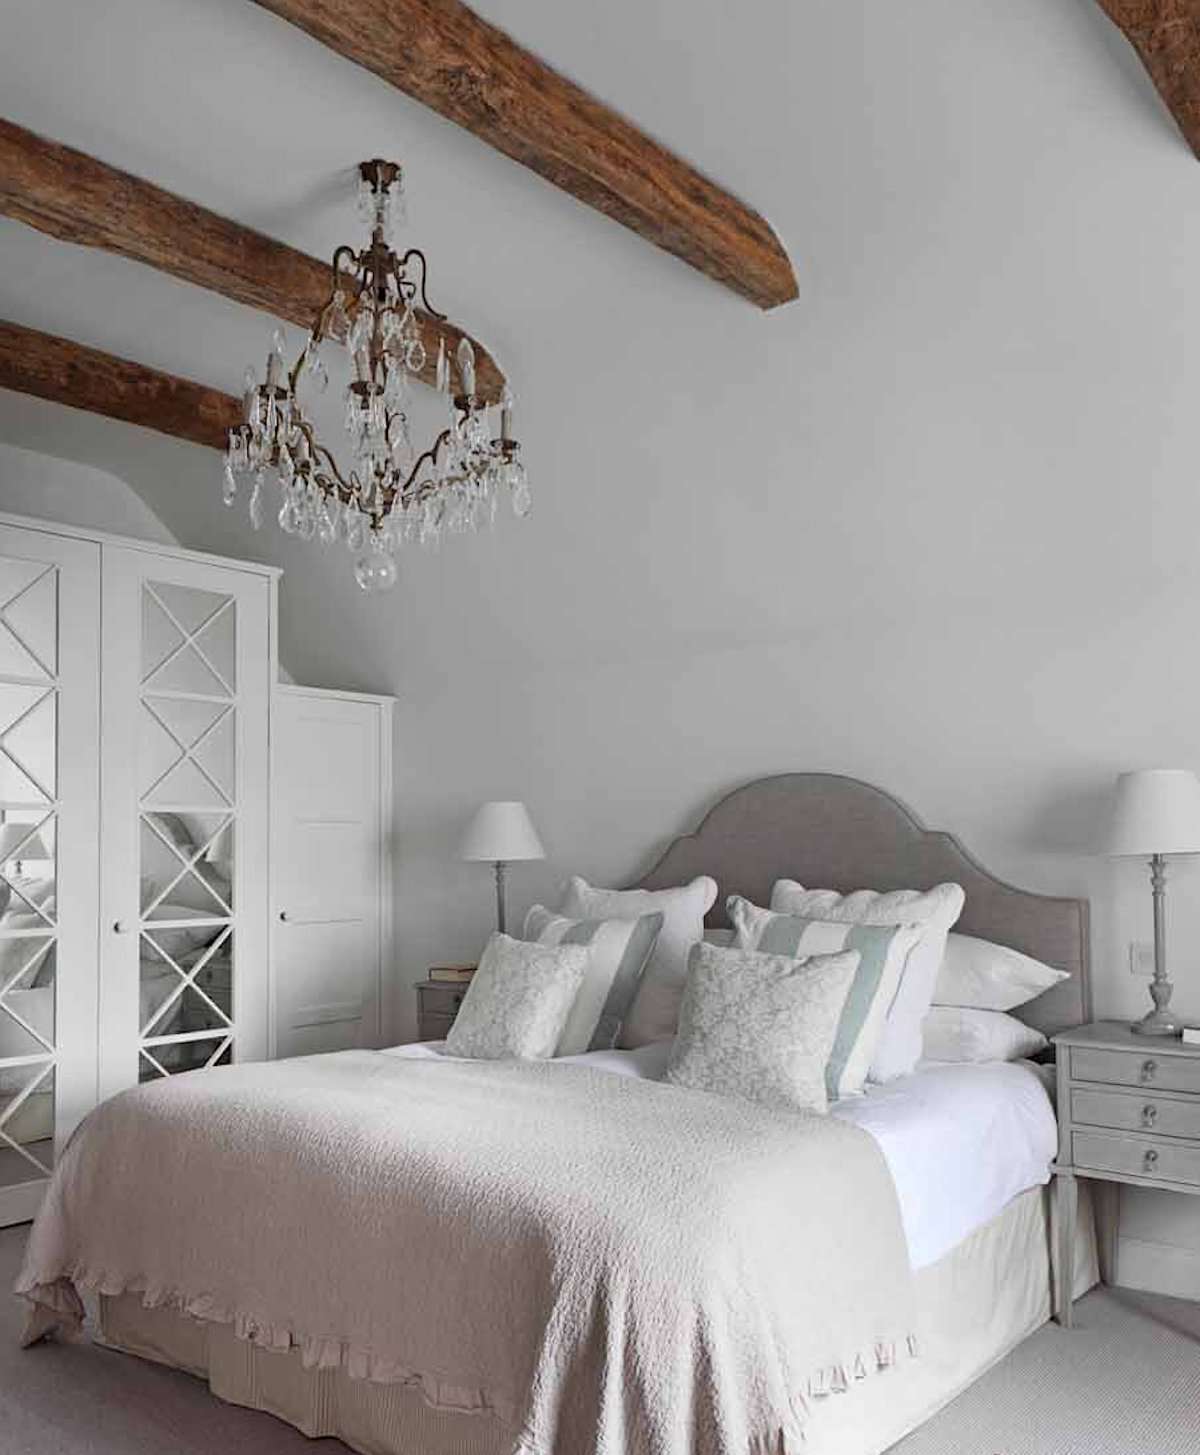 Schlafzimmer mit weißen Wänden, neutrale Farben mit leichten blauen Akzenten, freiliegende Holzbalken an der Decke, verzierter Kronleuchter, toskanischer Stil